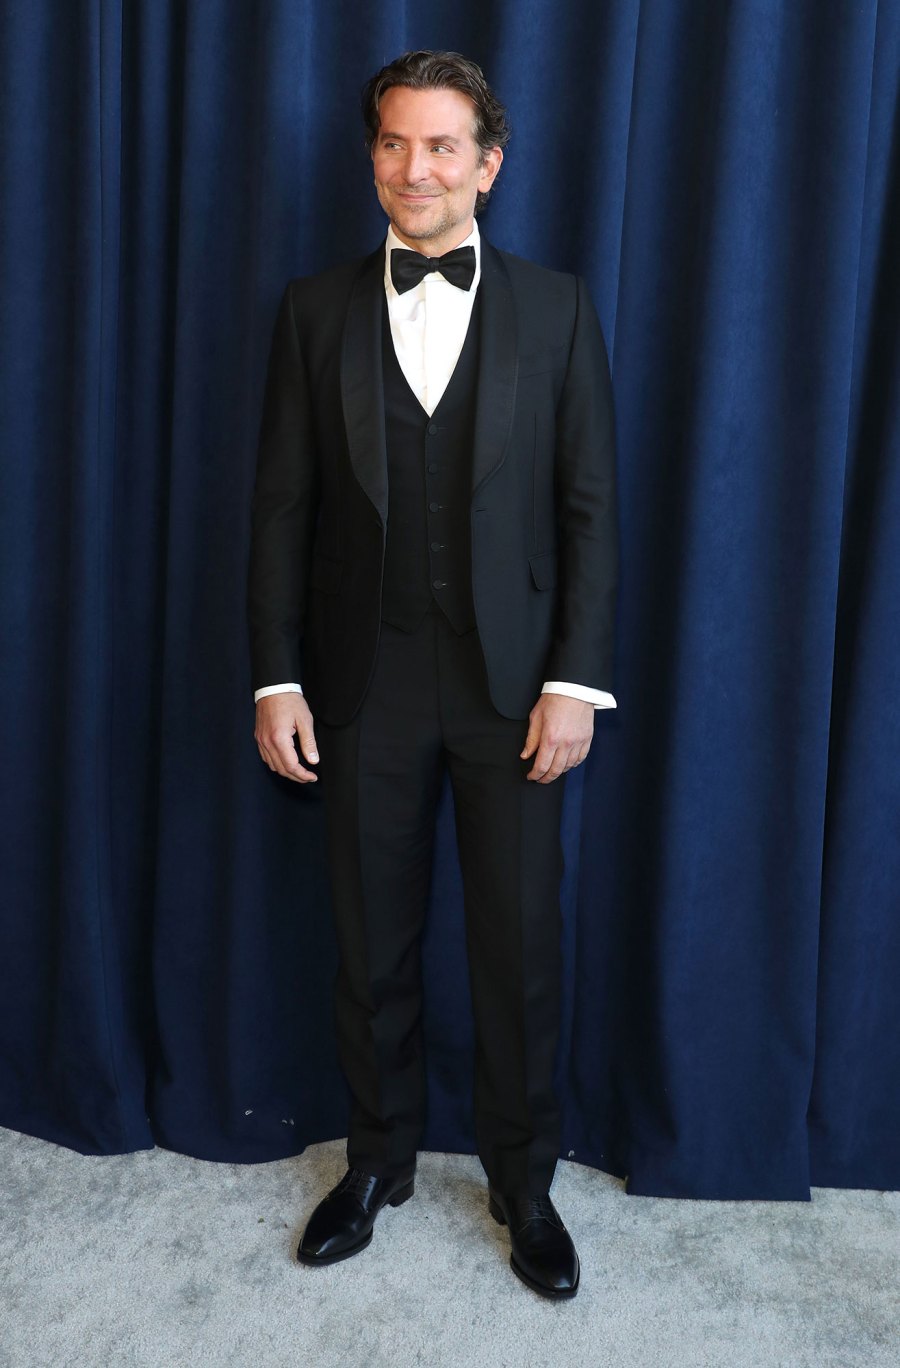 Bradley Cooper The Best Dressed Hottest Men at the 2022 SAG Awards